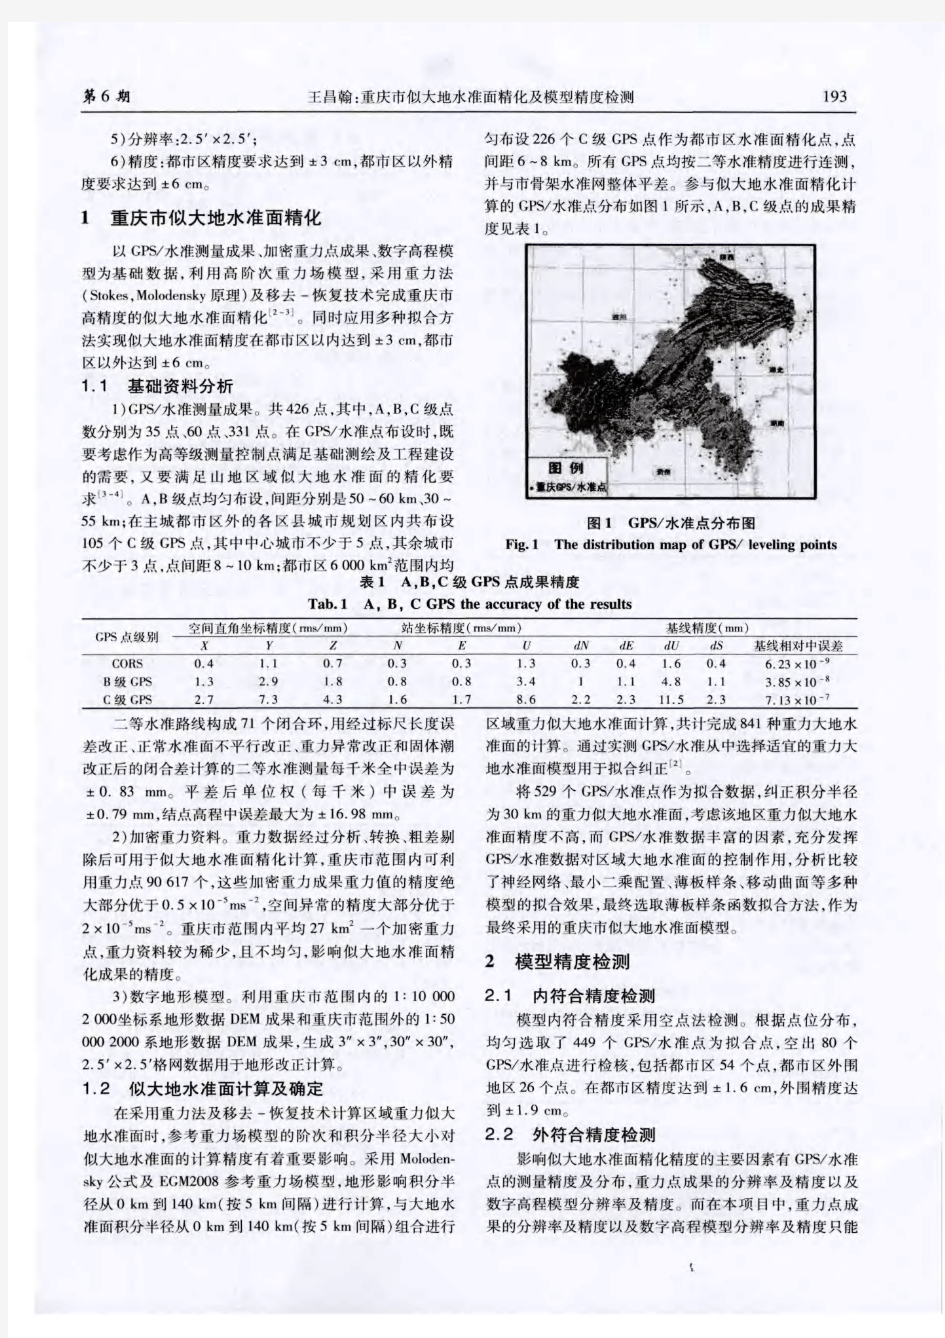 重庆市似大地水准面精化及模型精度检测